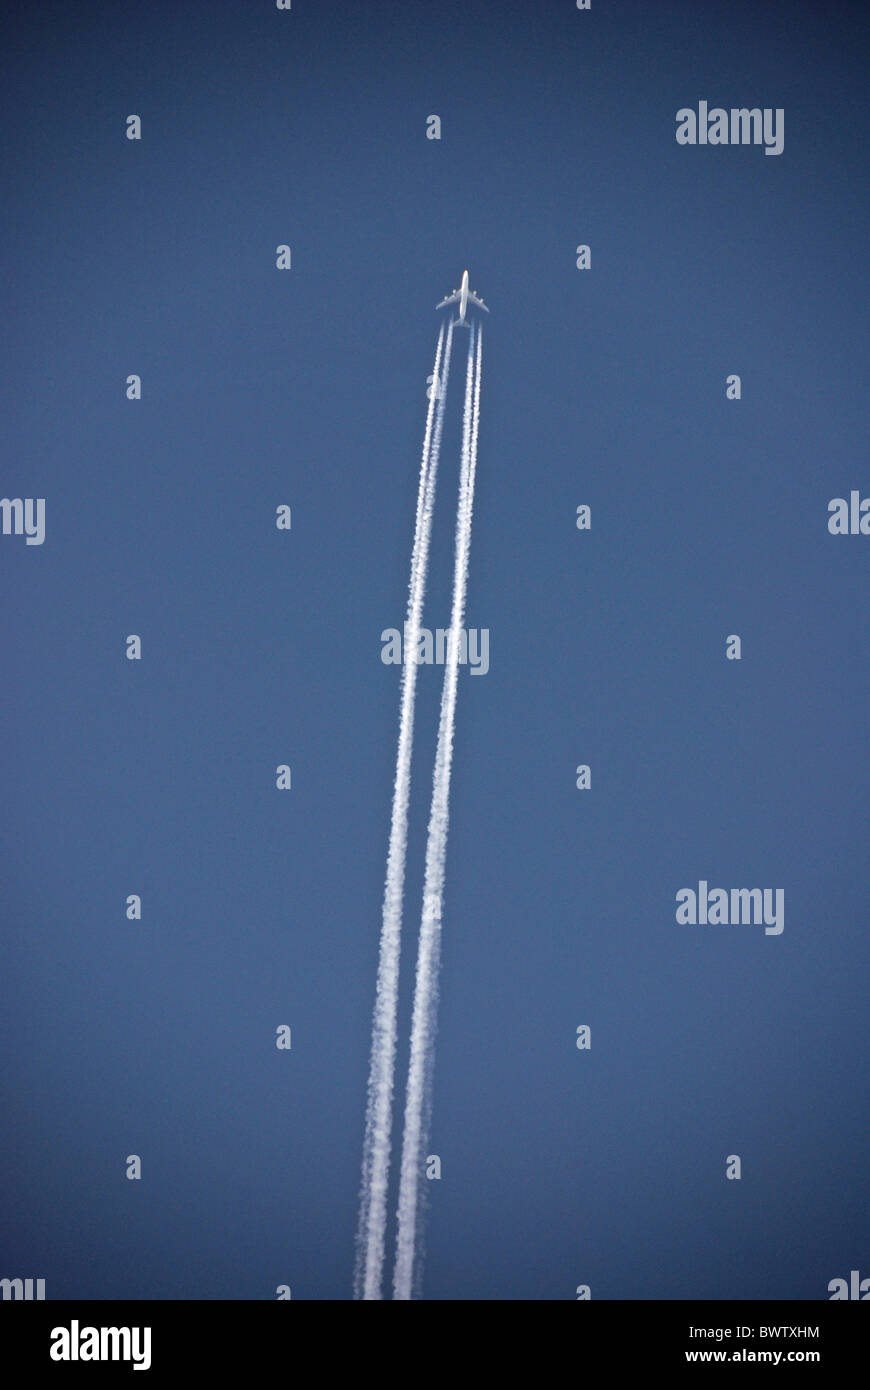 Les gaz d'échappement des gaz d'échappement CO2 ciel bleu aviateur flying fly distance Vols Vols avion aérien airp Banque D'Images